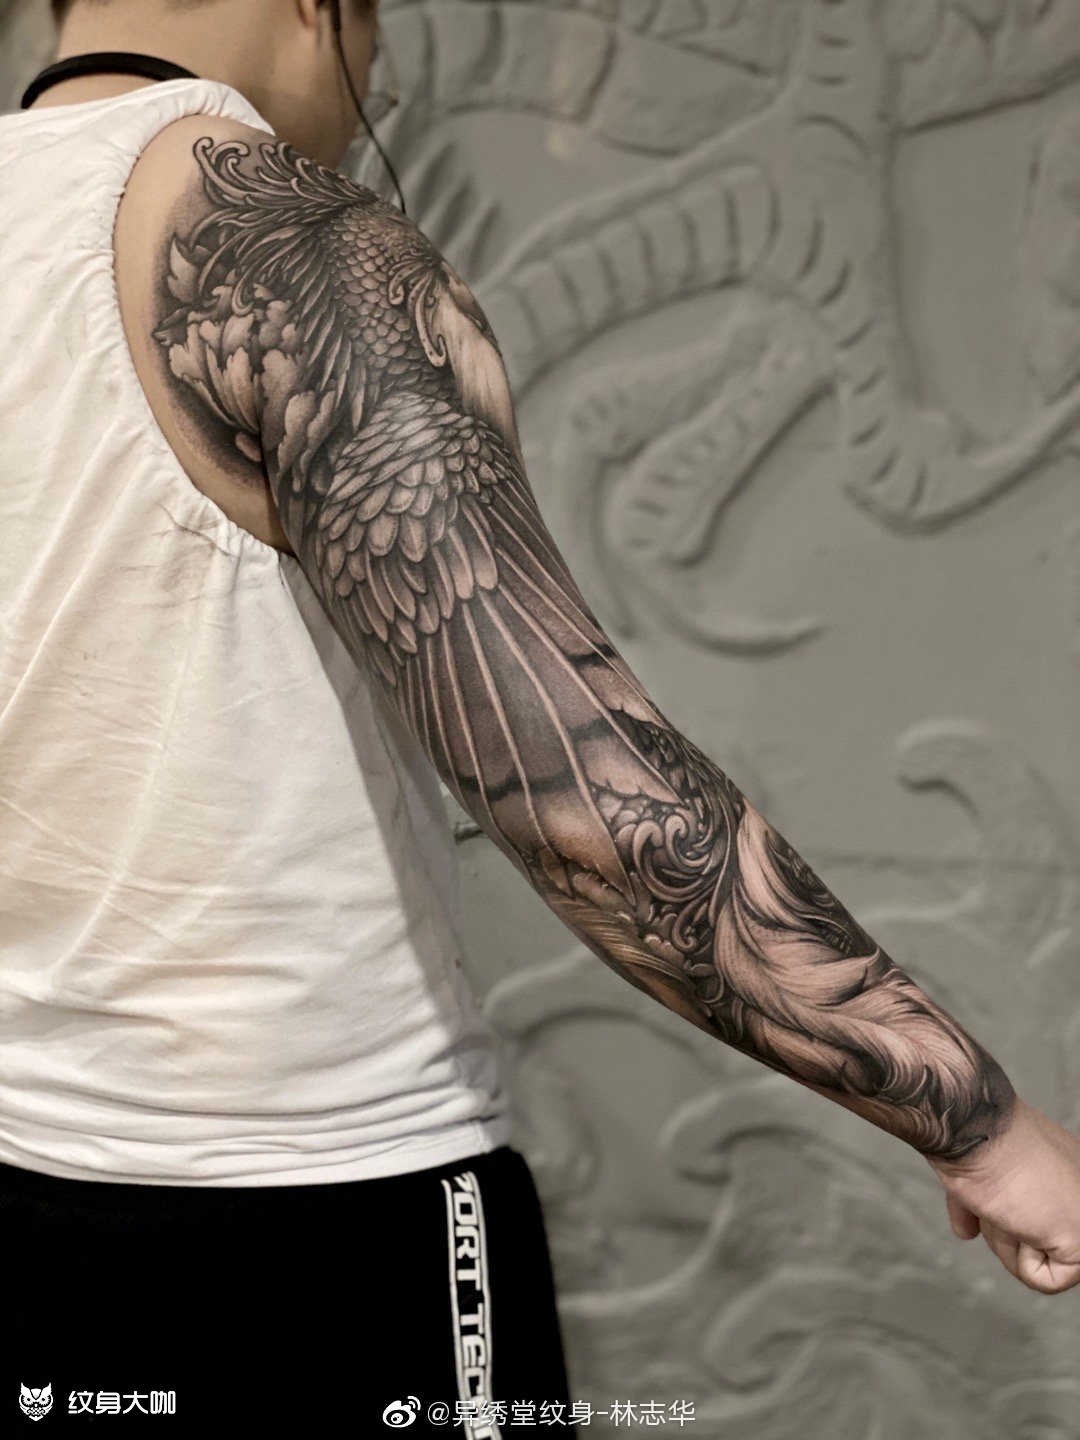 想纹这种风格的整臂纹身,有哪位